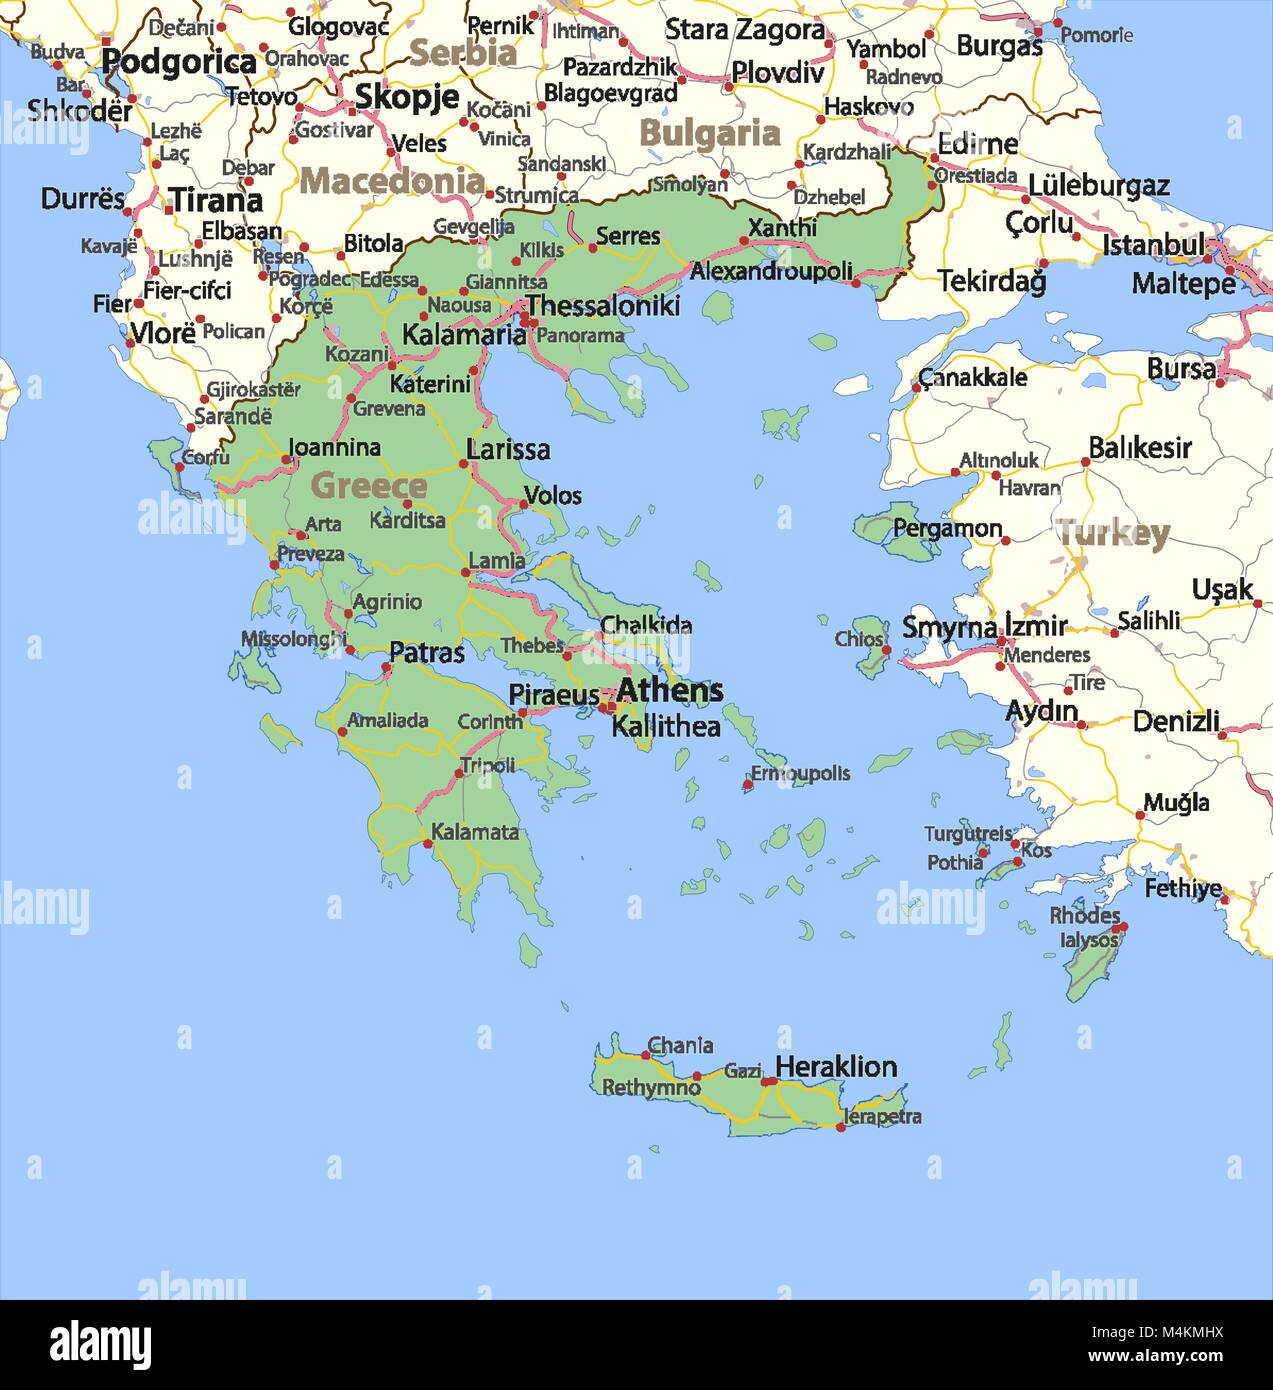 Mappa di Grecia. Mostra i confini, zone urbane, nomi di località e strade. Le etichette in inglese dove possibile. Proiezione: proiezione di Mercatore. Illustrazione Vettoriale